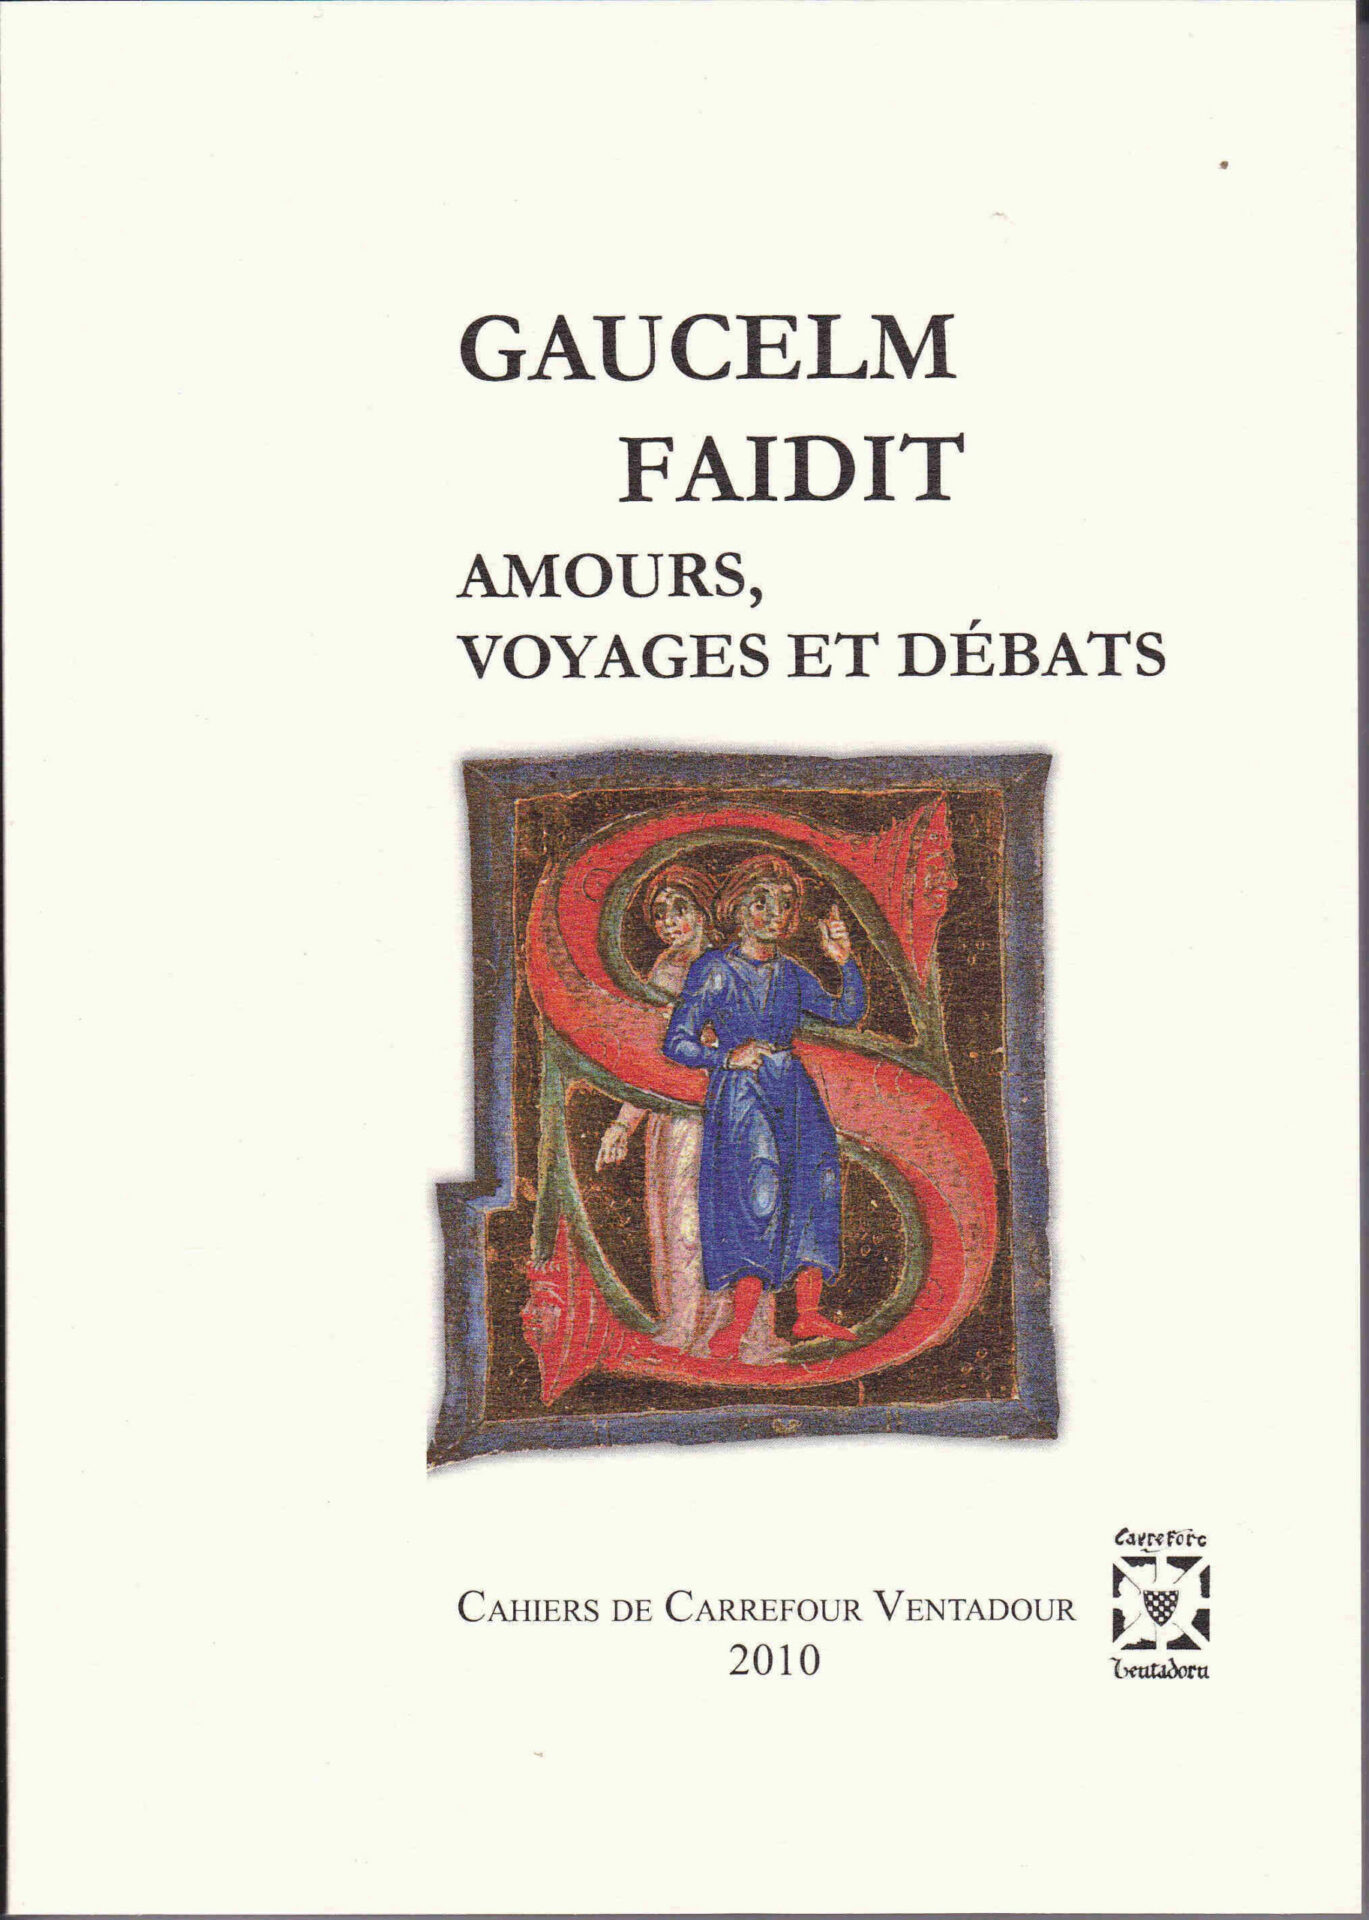 Gaulcem Faidit, amours, voyages et débats page couverture